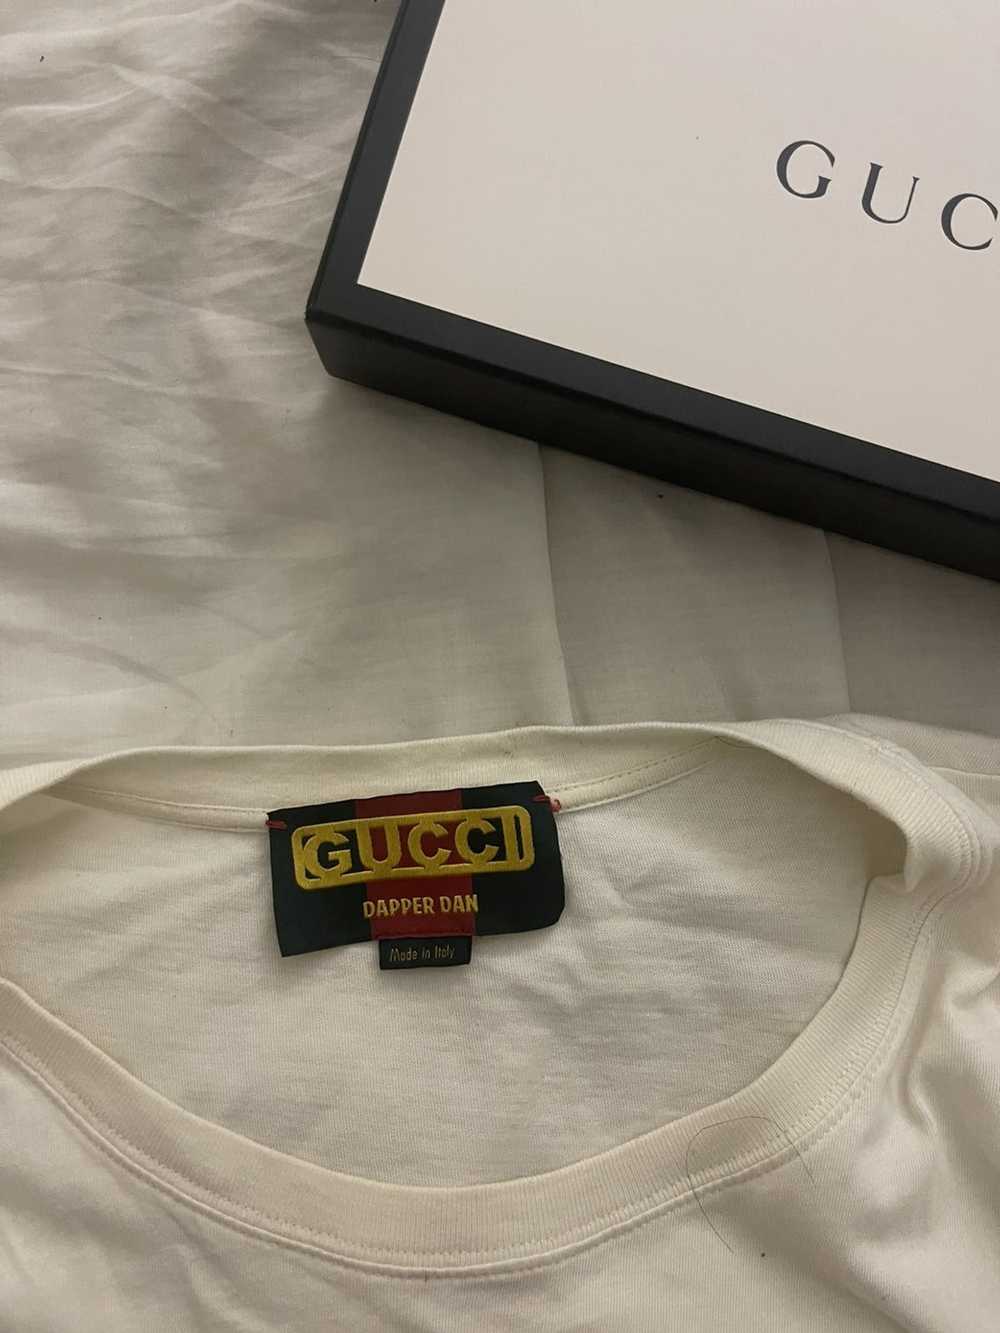 Gucci Gucci dapper dan logo T-shirt - image 4